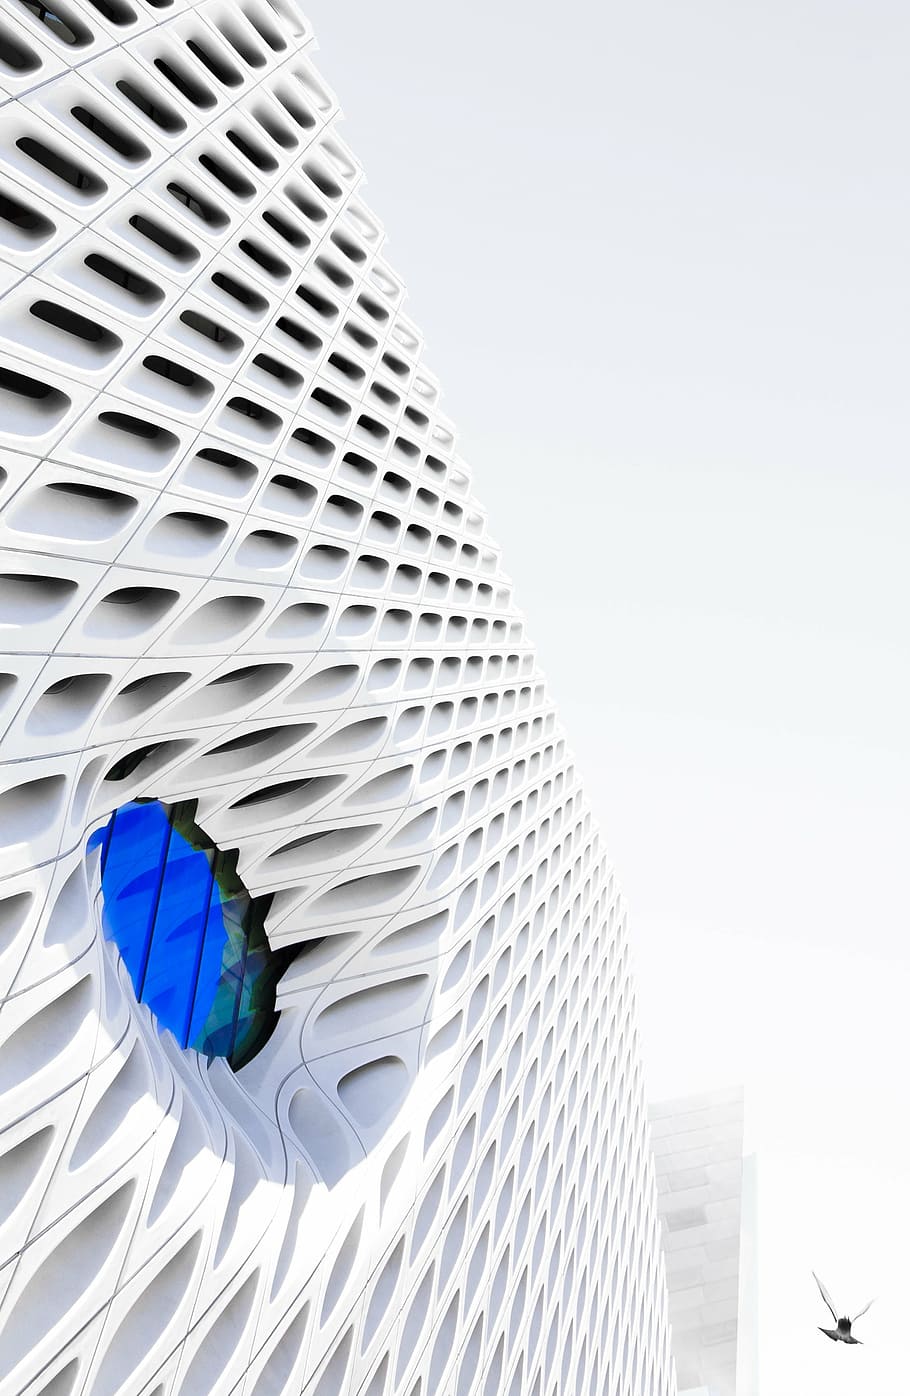 putih, beton, bangunan, bulat, biru, jendela kaca, berlubang, pembicara, komponen, arsitektur